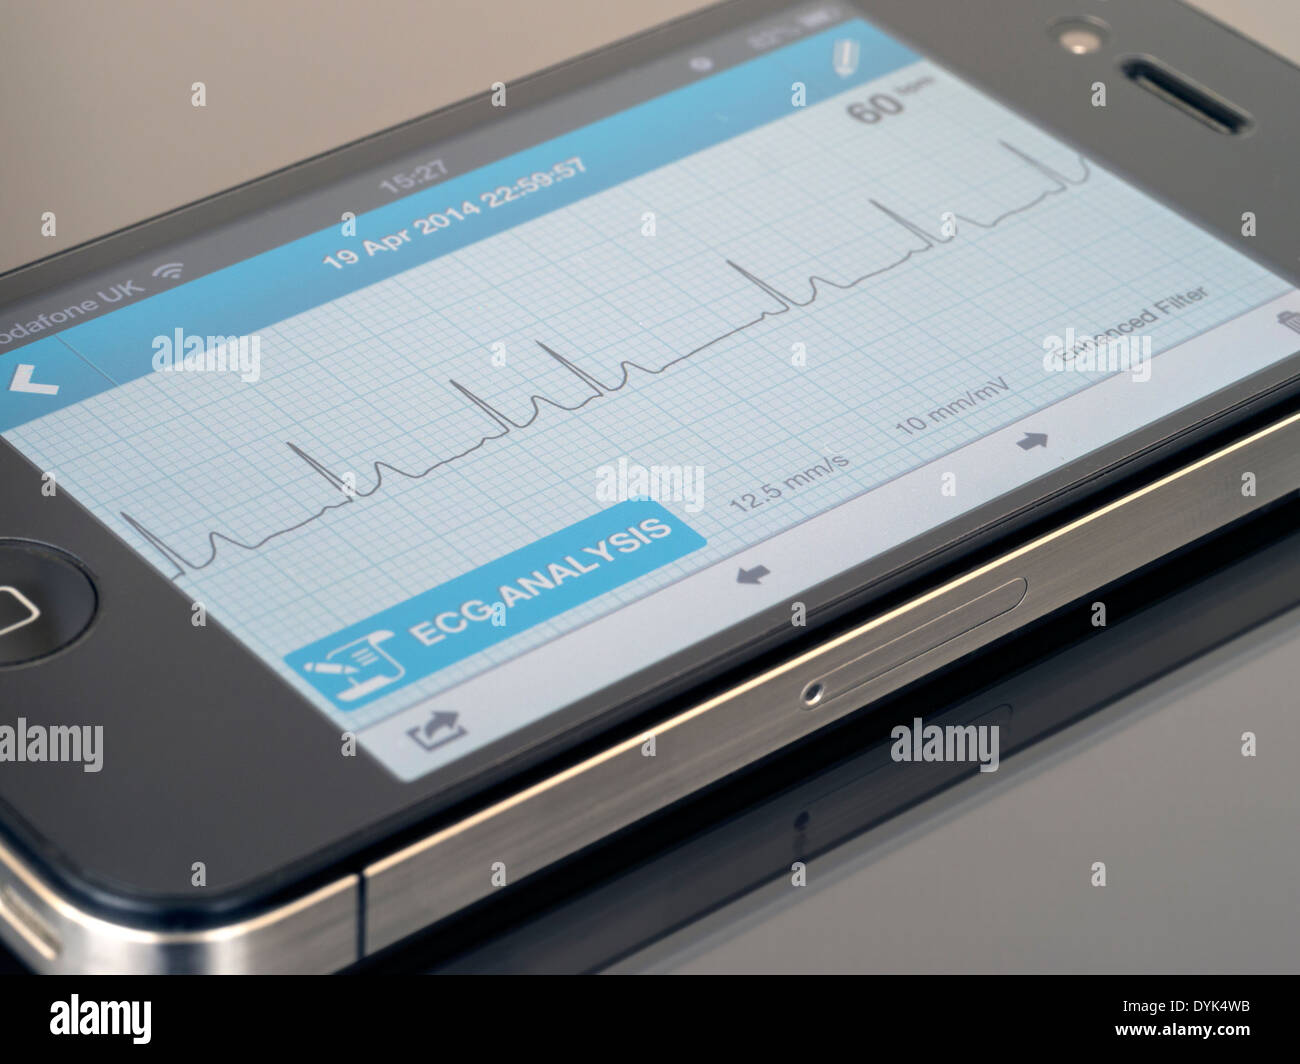 ECG portatile EKG Cardiofrequenzimetro App in esecuzione su iPhone 4 che mostra sinusale normale ritmo cardiaco tracciato con un battito ectopico. Foto Stock